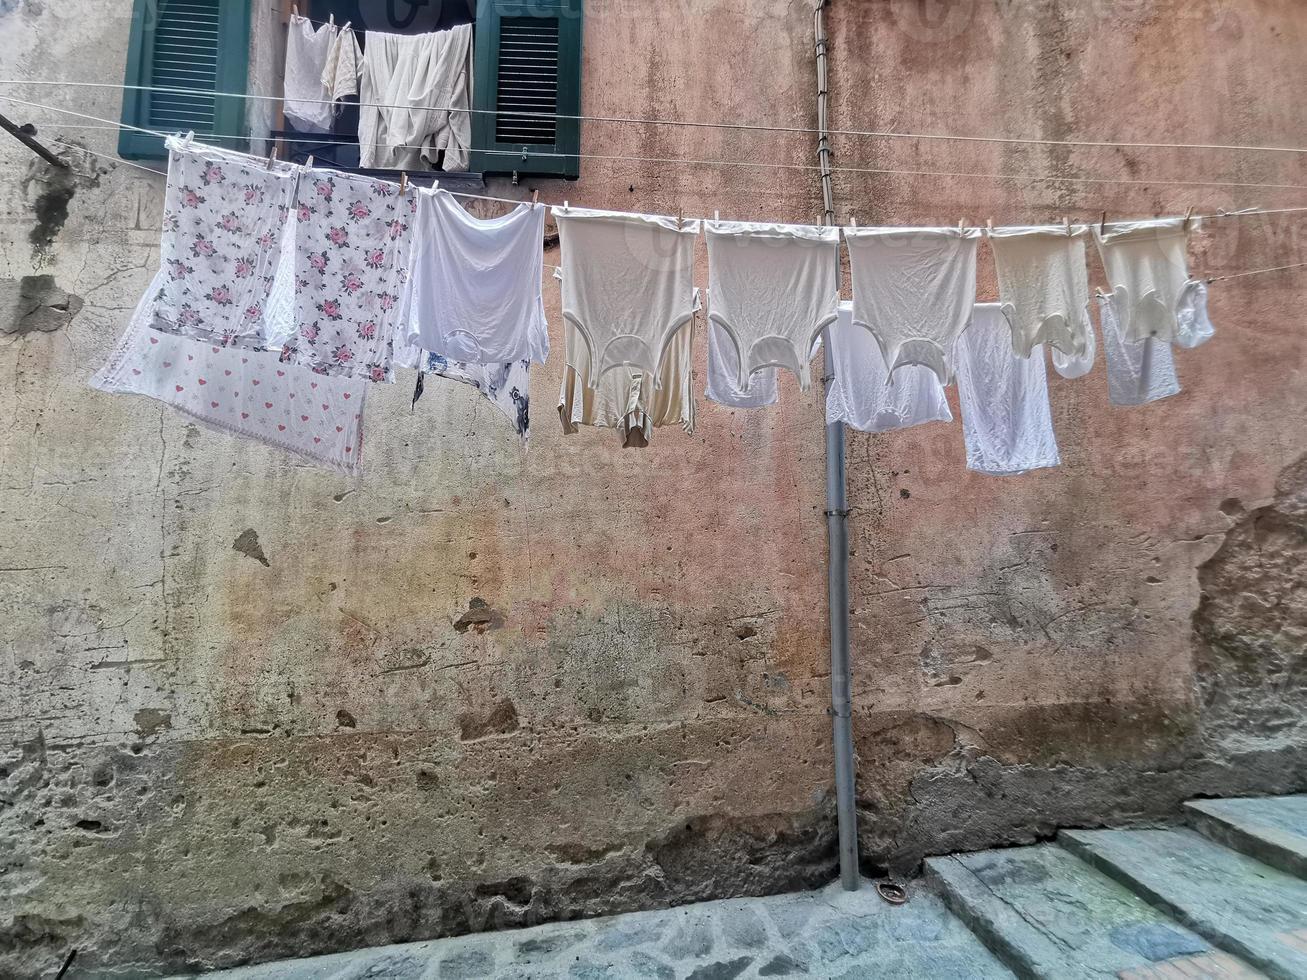 kläder hängande till torr i italiensk piktorisk by foto